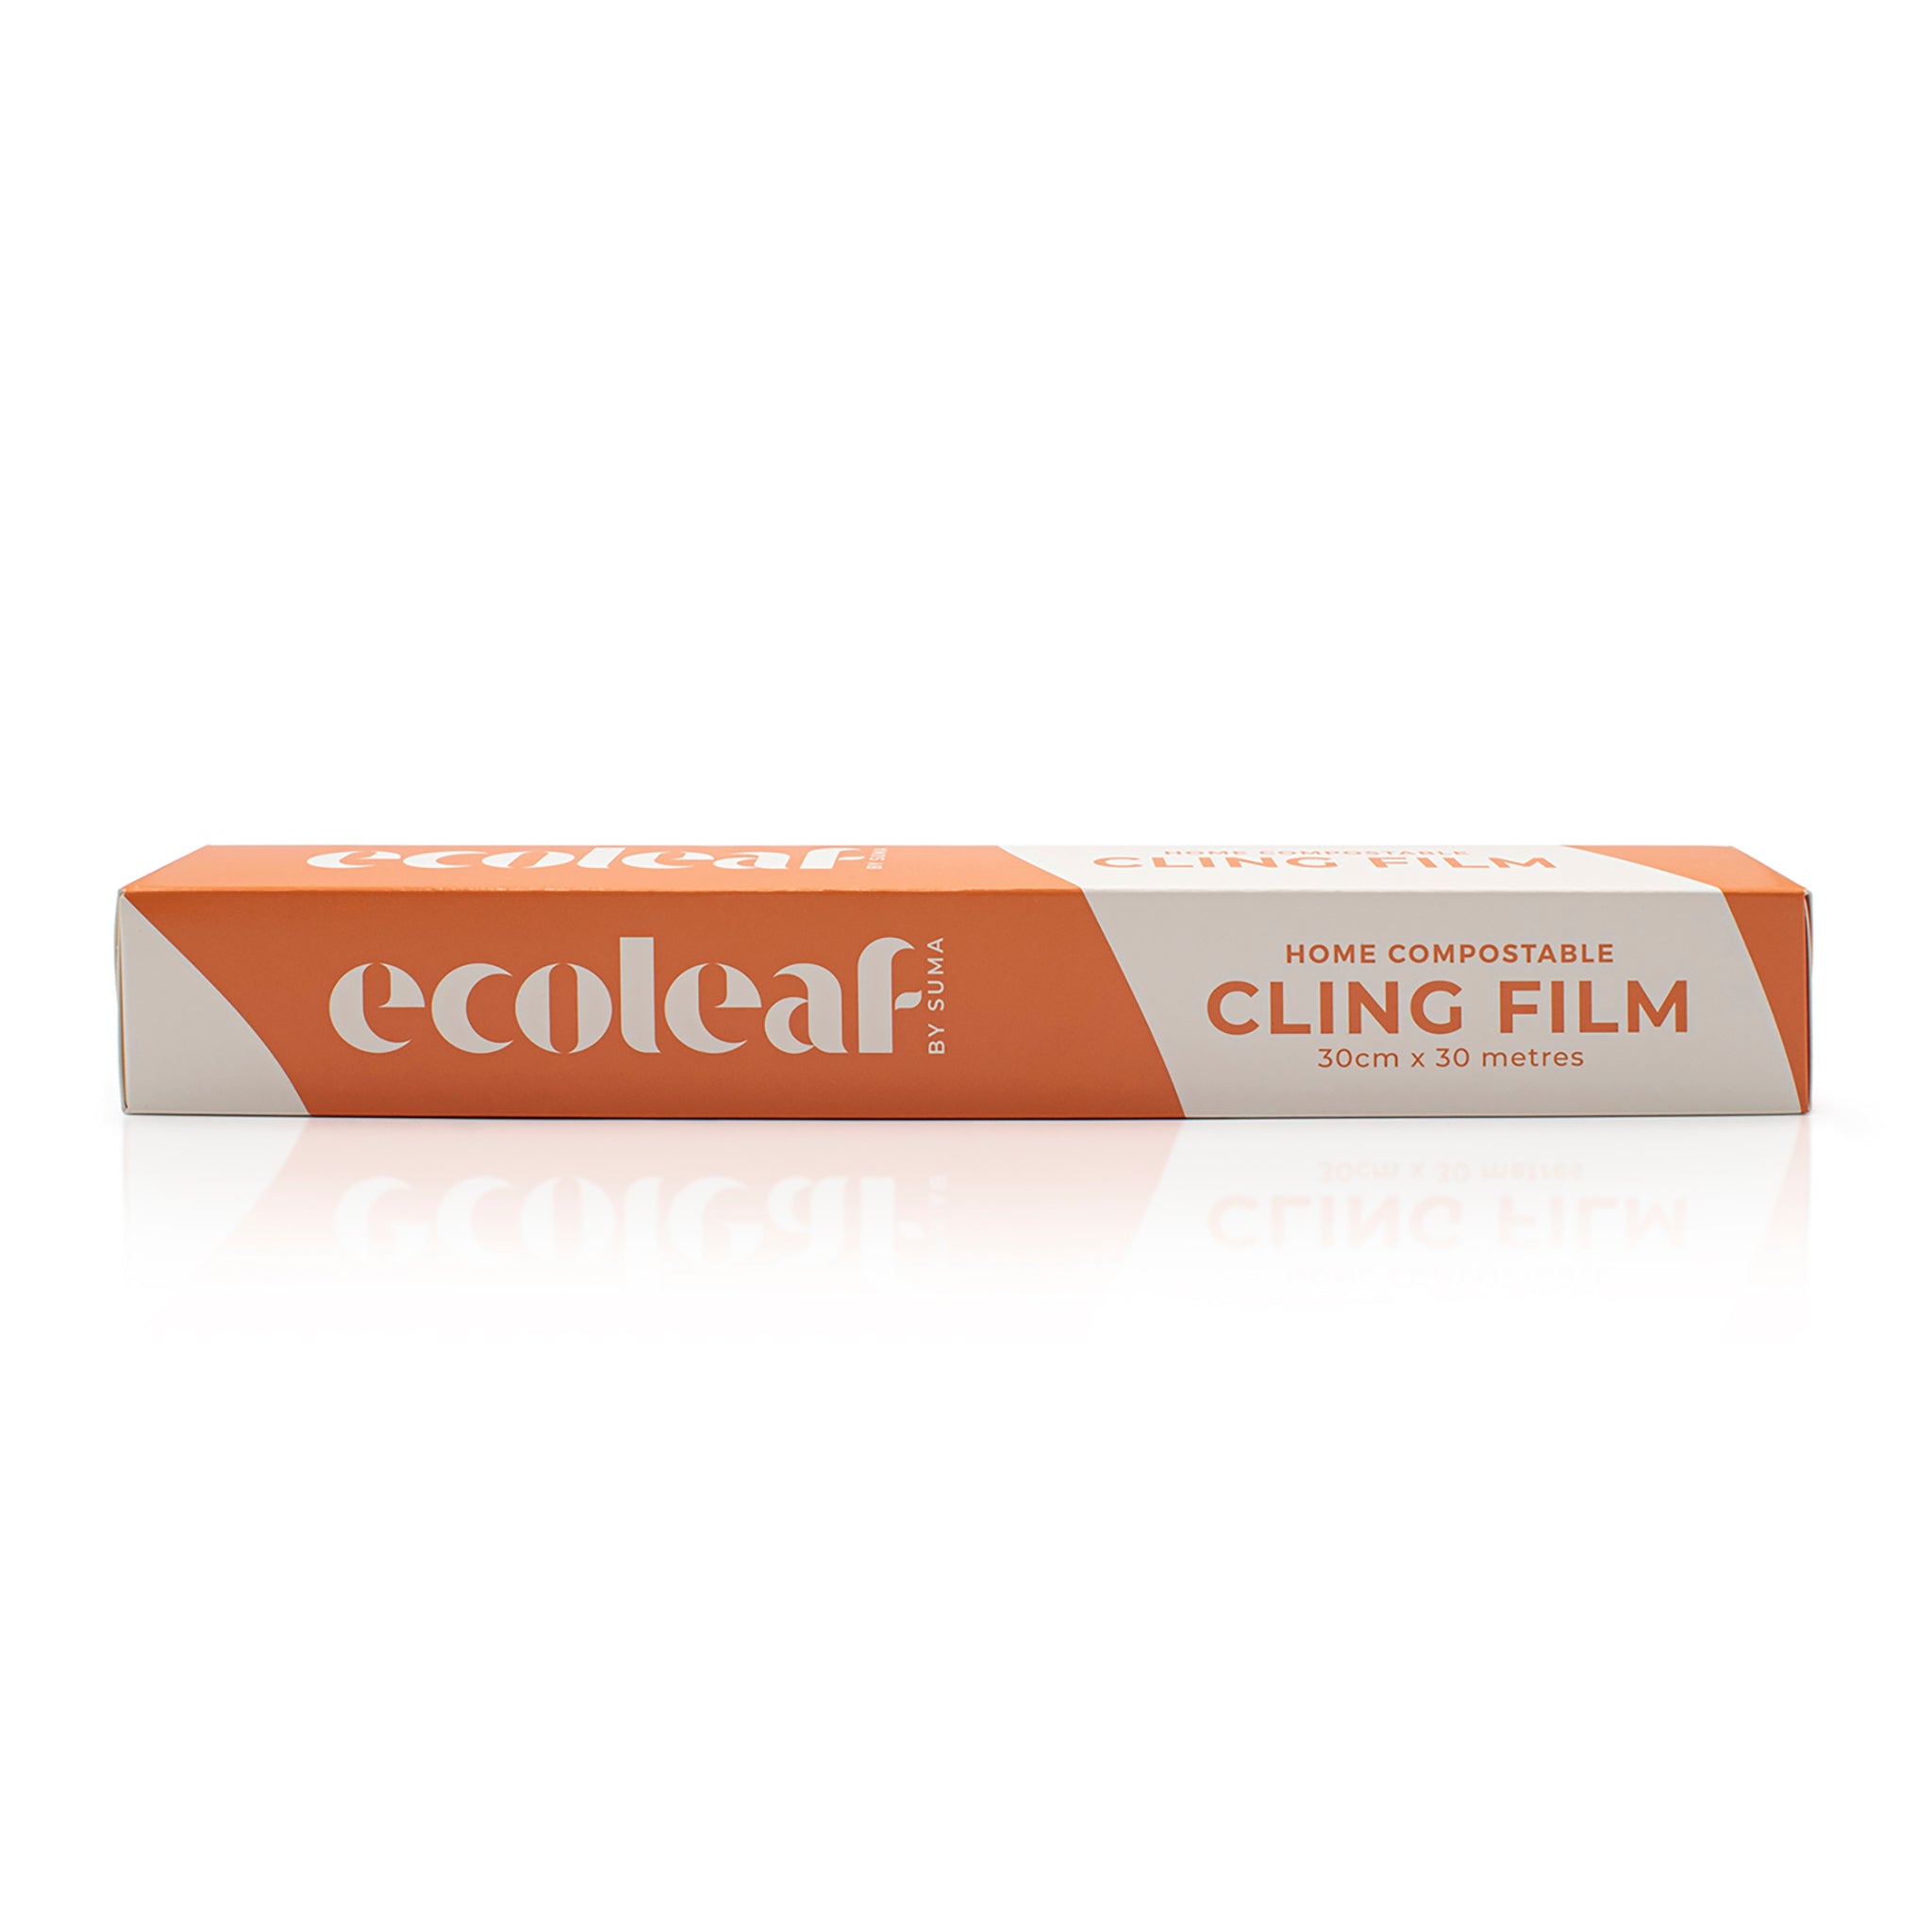 Eco leaf, home compostable cling film inside orange packaging box